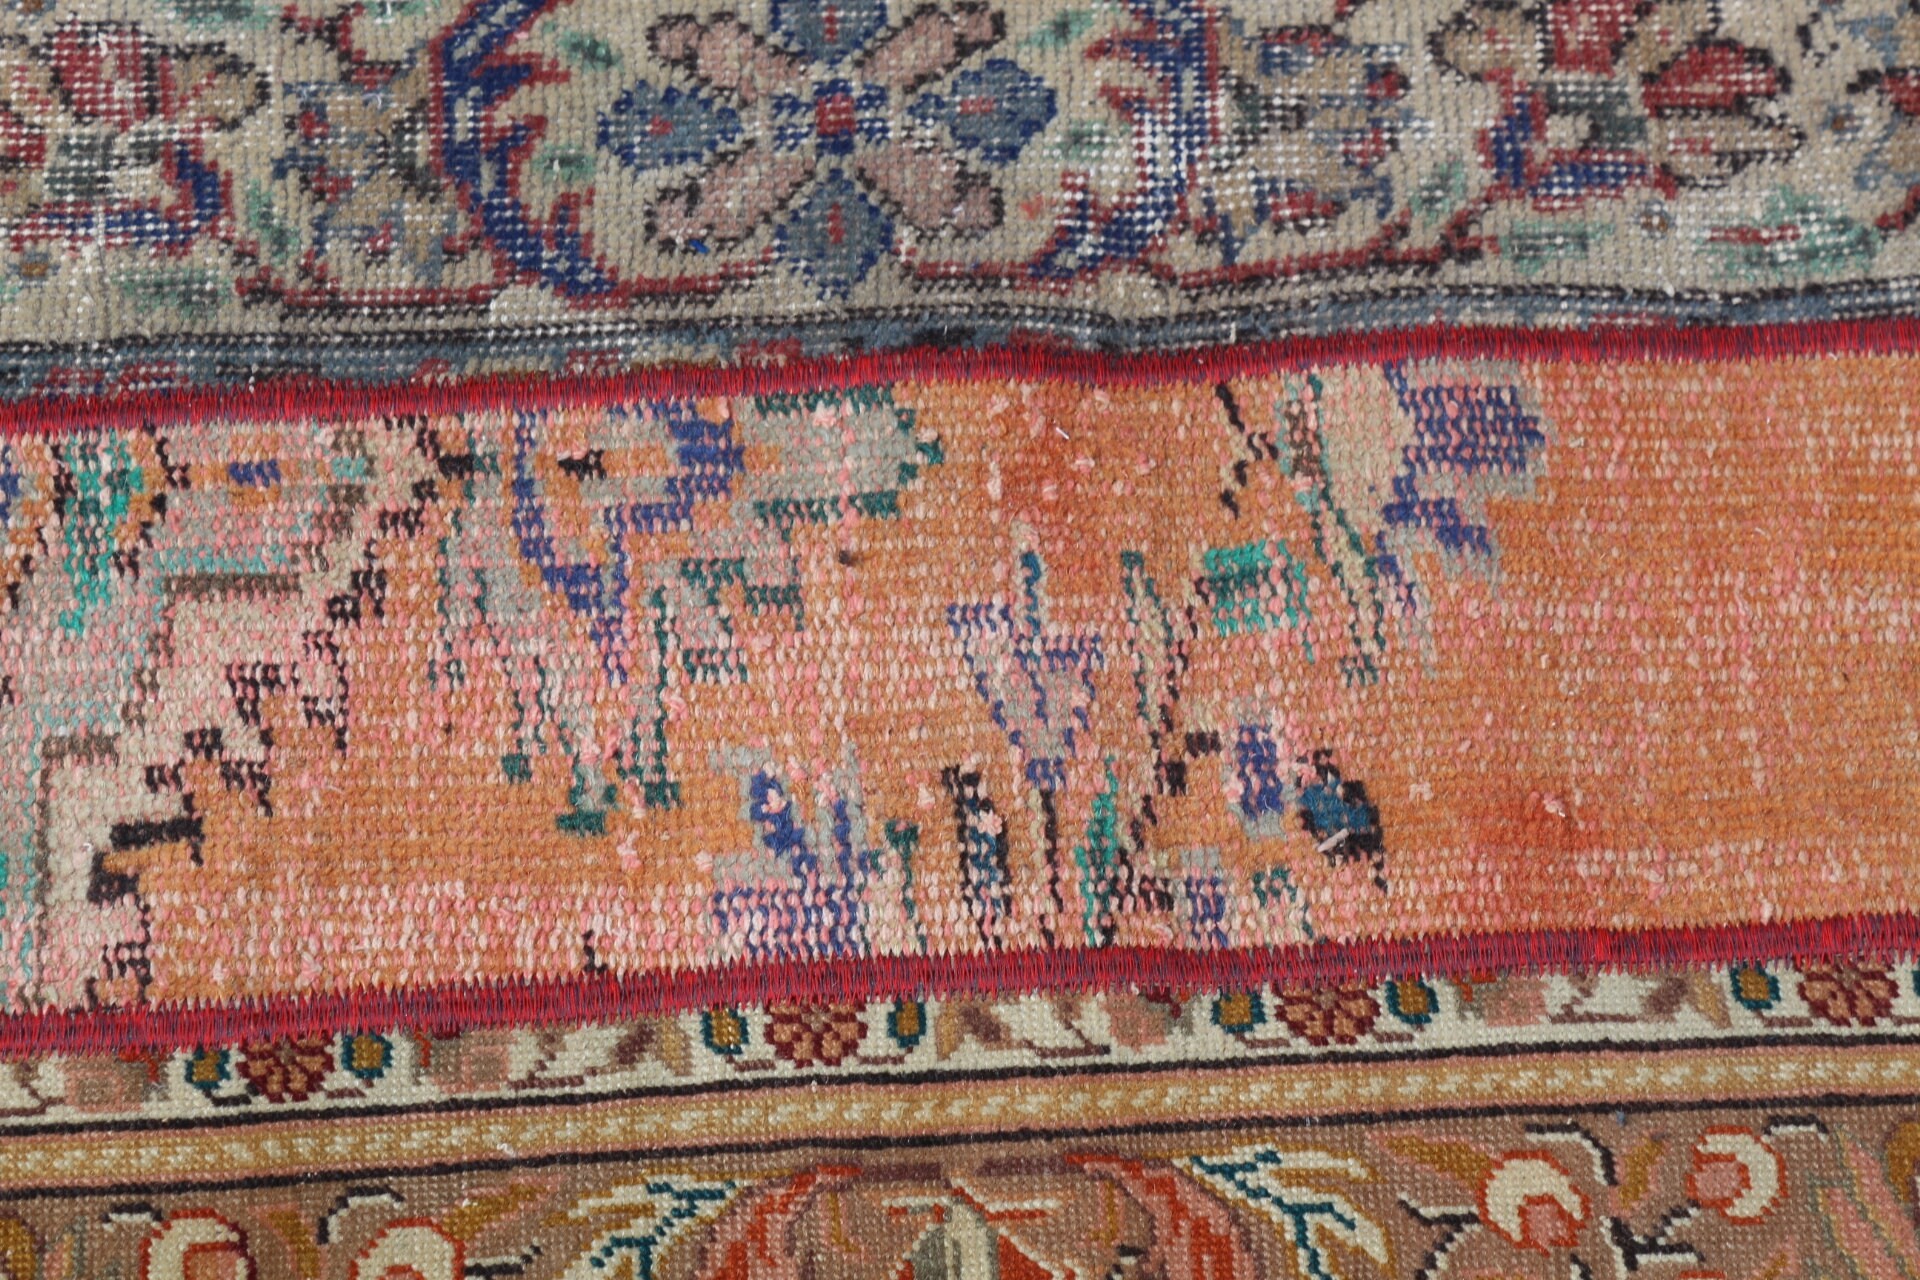 Wool Rug, Vintage Rugs, Natural Rug, Rugs for Runner, Orange Bedroom Rug, Hallway Rug, 1.7x5.1 ft Runner Rug, Turkish Rug, Moroccan Rugs